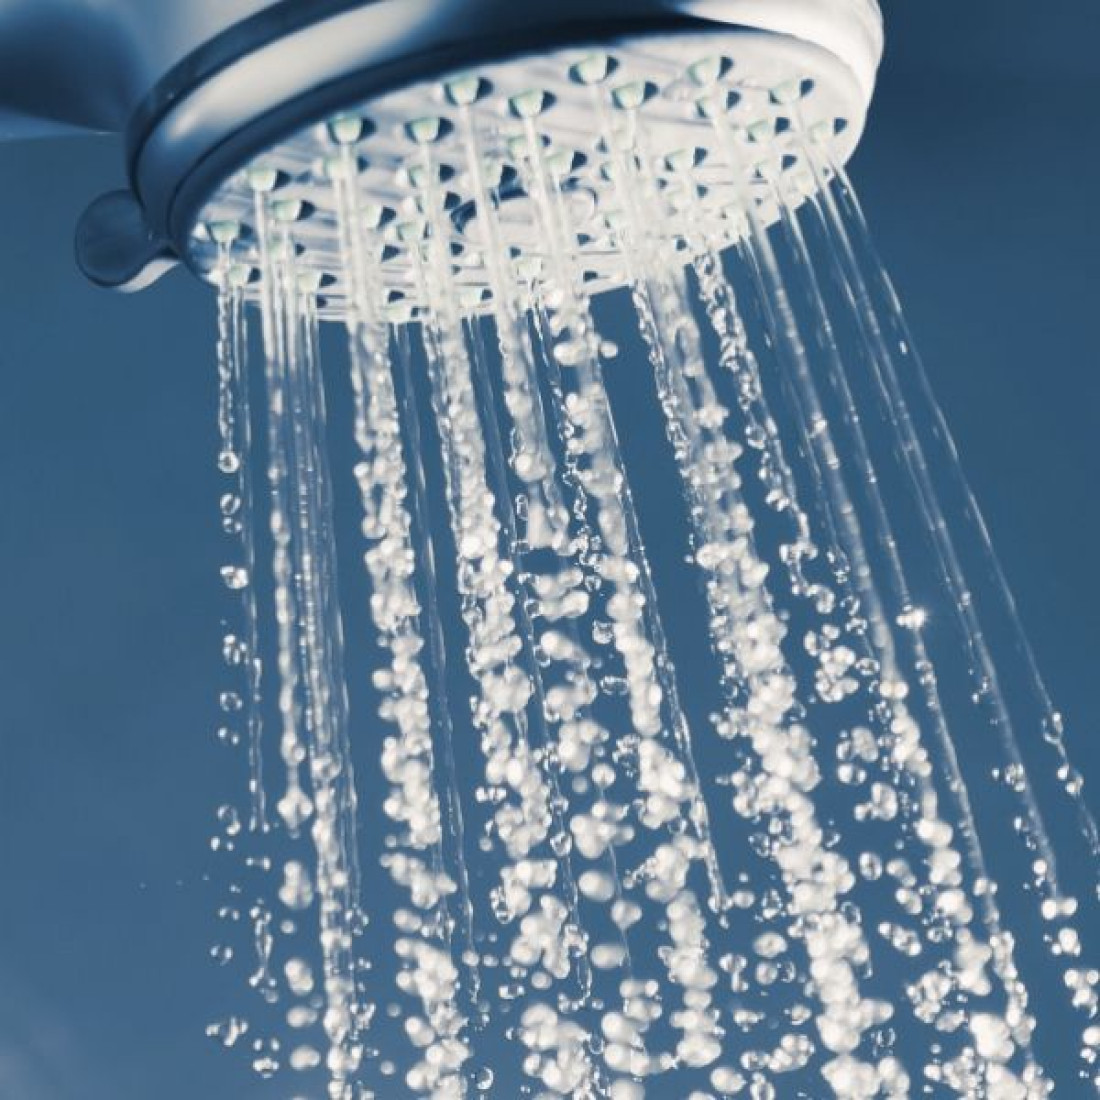 Zastosowanie galwanicznych uzdatniaczy wody Energywater®